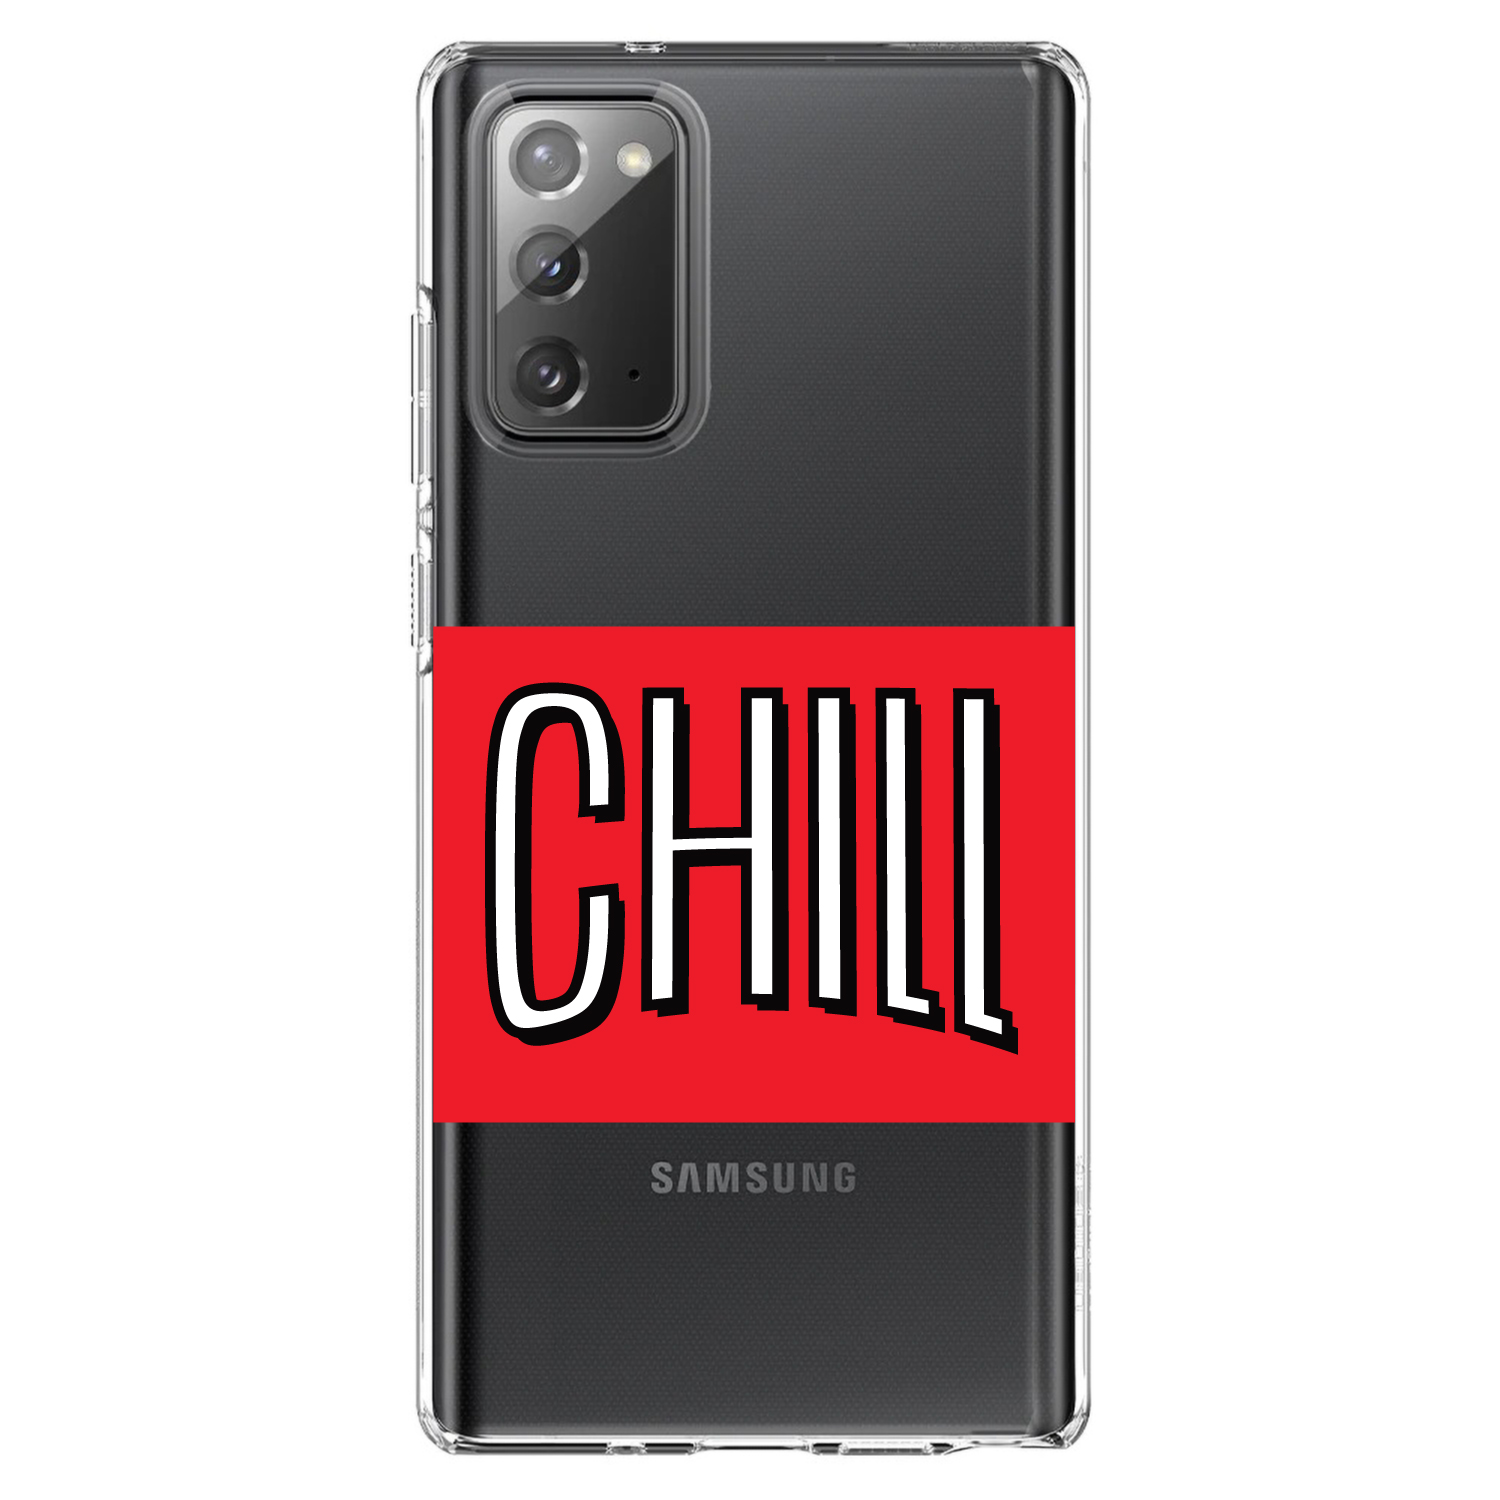 Với ốp lưng Galaxy Note CHILL trắng đỏ, bạn sẽ thấy điện thoại của mình trở nên ấn tượng và độc đáo hơn bao giờ hết. Màu sắc tươi sáng, thiết kế tinh tế và bảo vệ chắc chắn sẽ giúp bạn tự tin sử dụng điện thoại mà không cần lo lắng về sự trầy xước hay va đập.